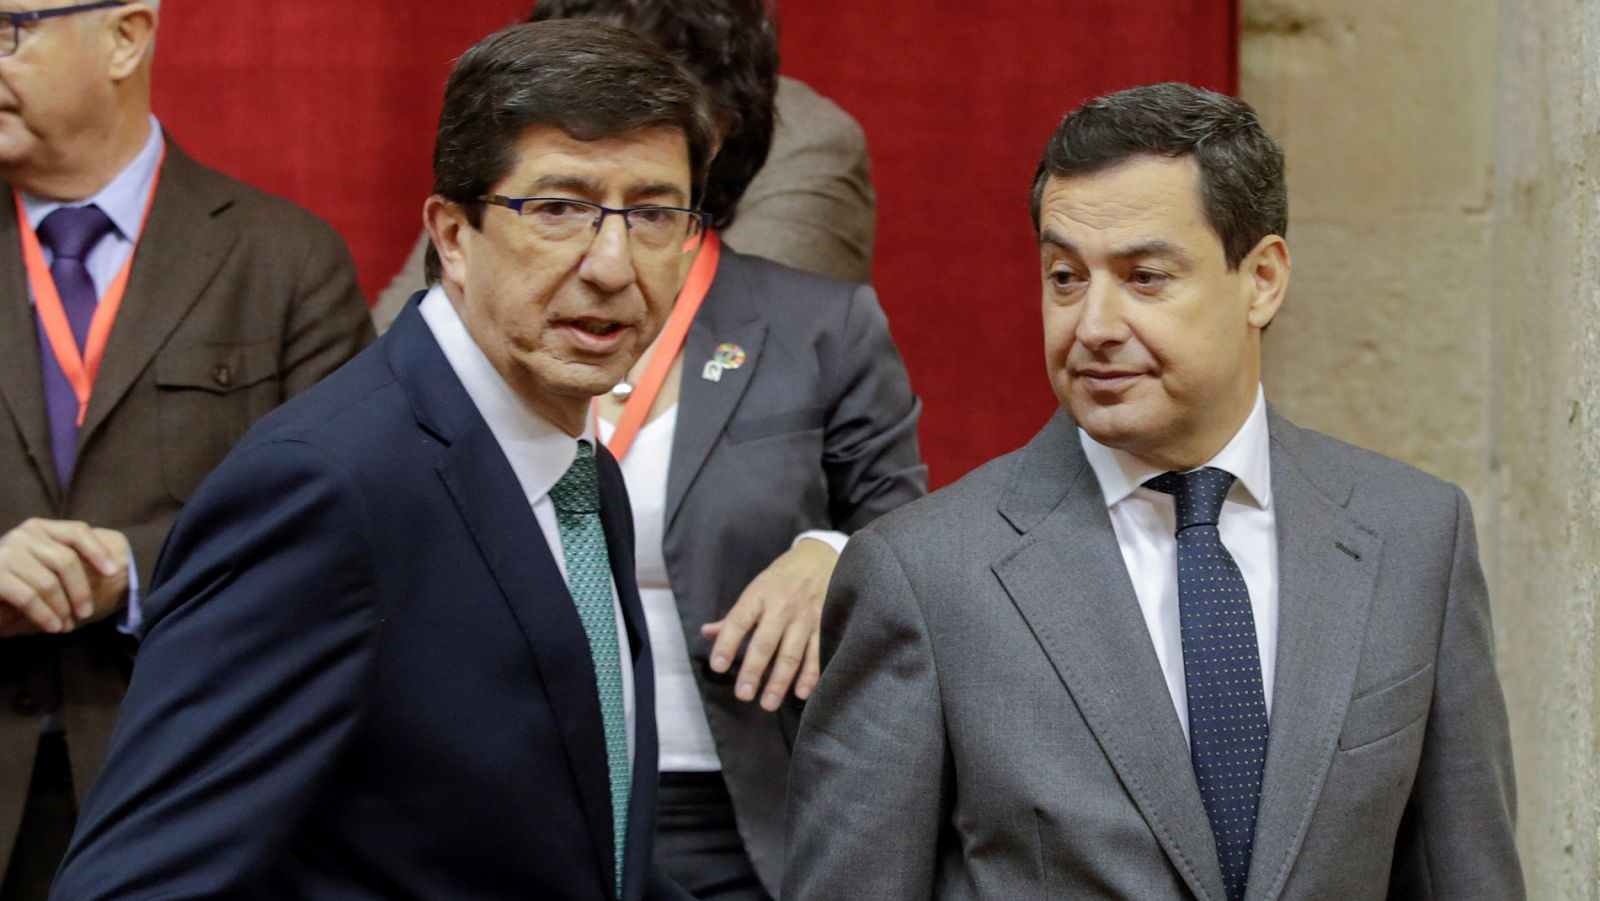 Los vetos entre partidos andaluces complica la investidura de un candidato y amaga con repetición de elecciones